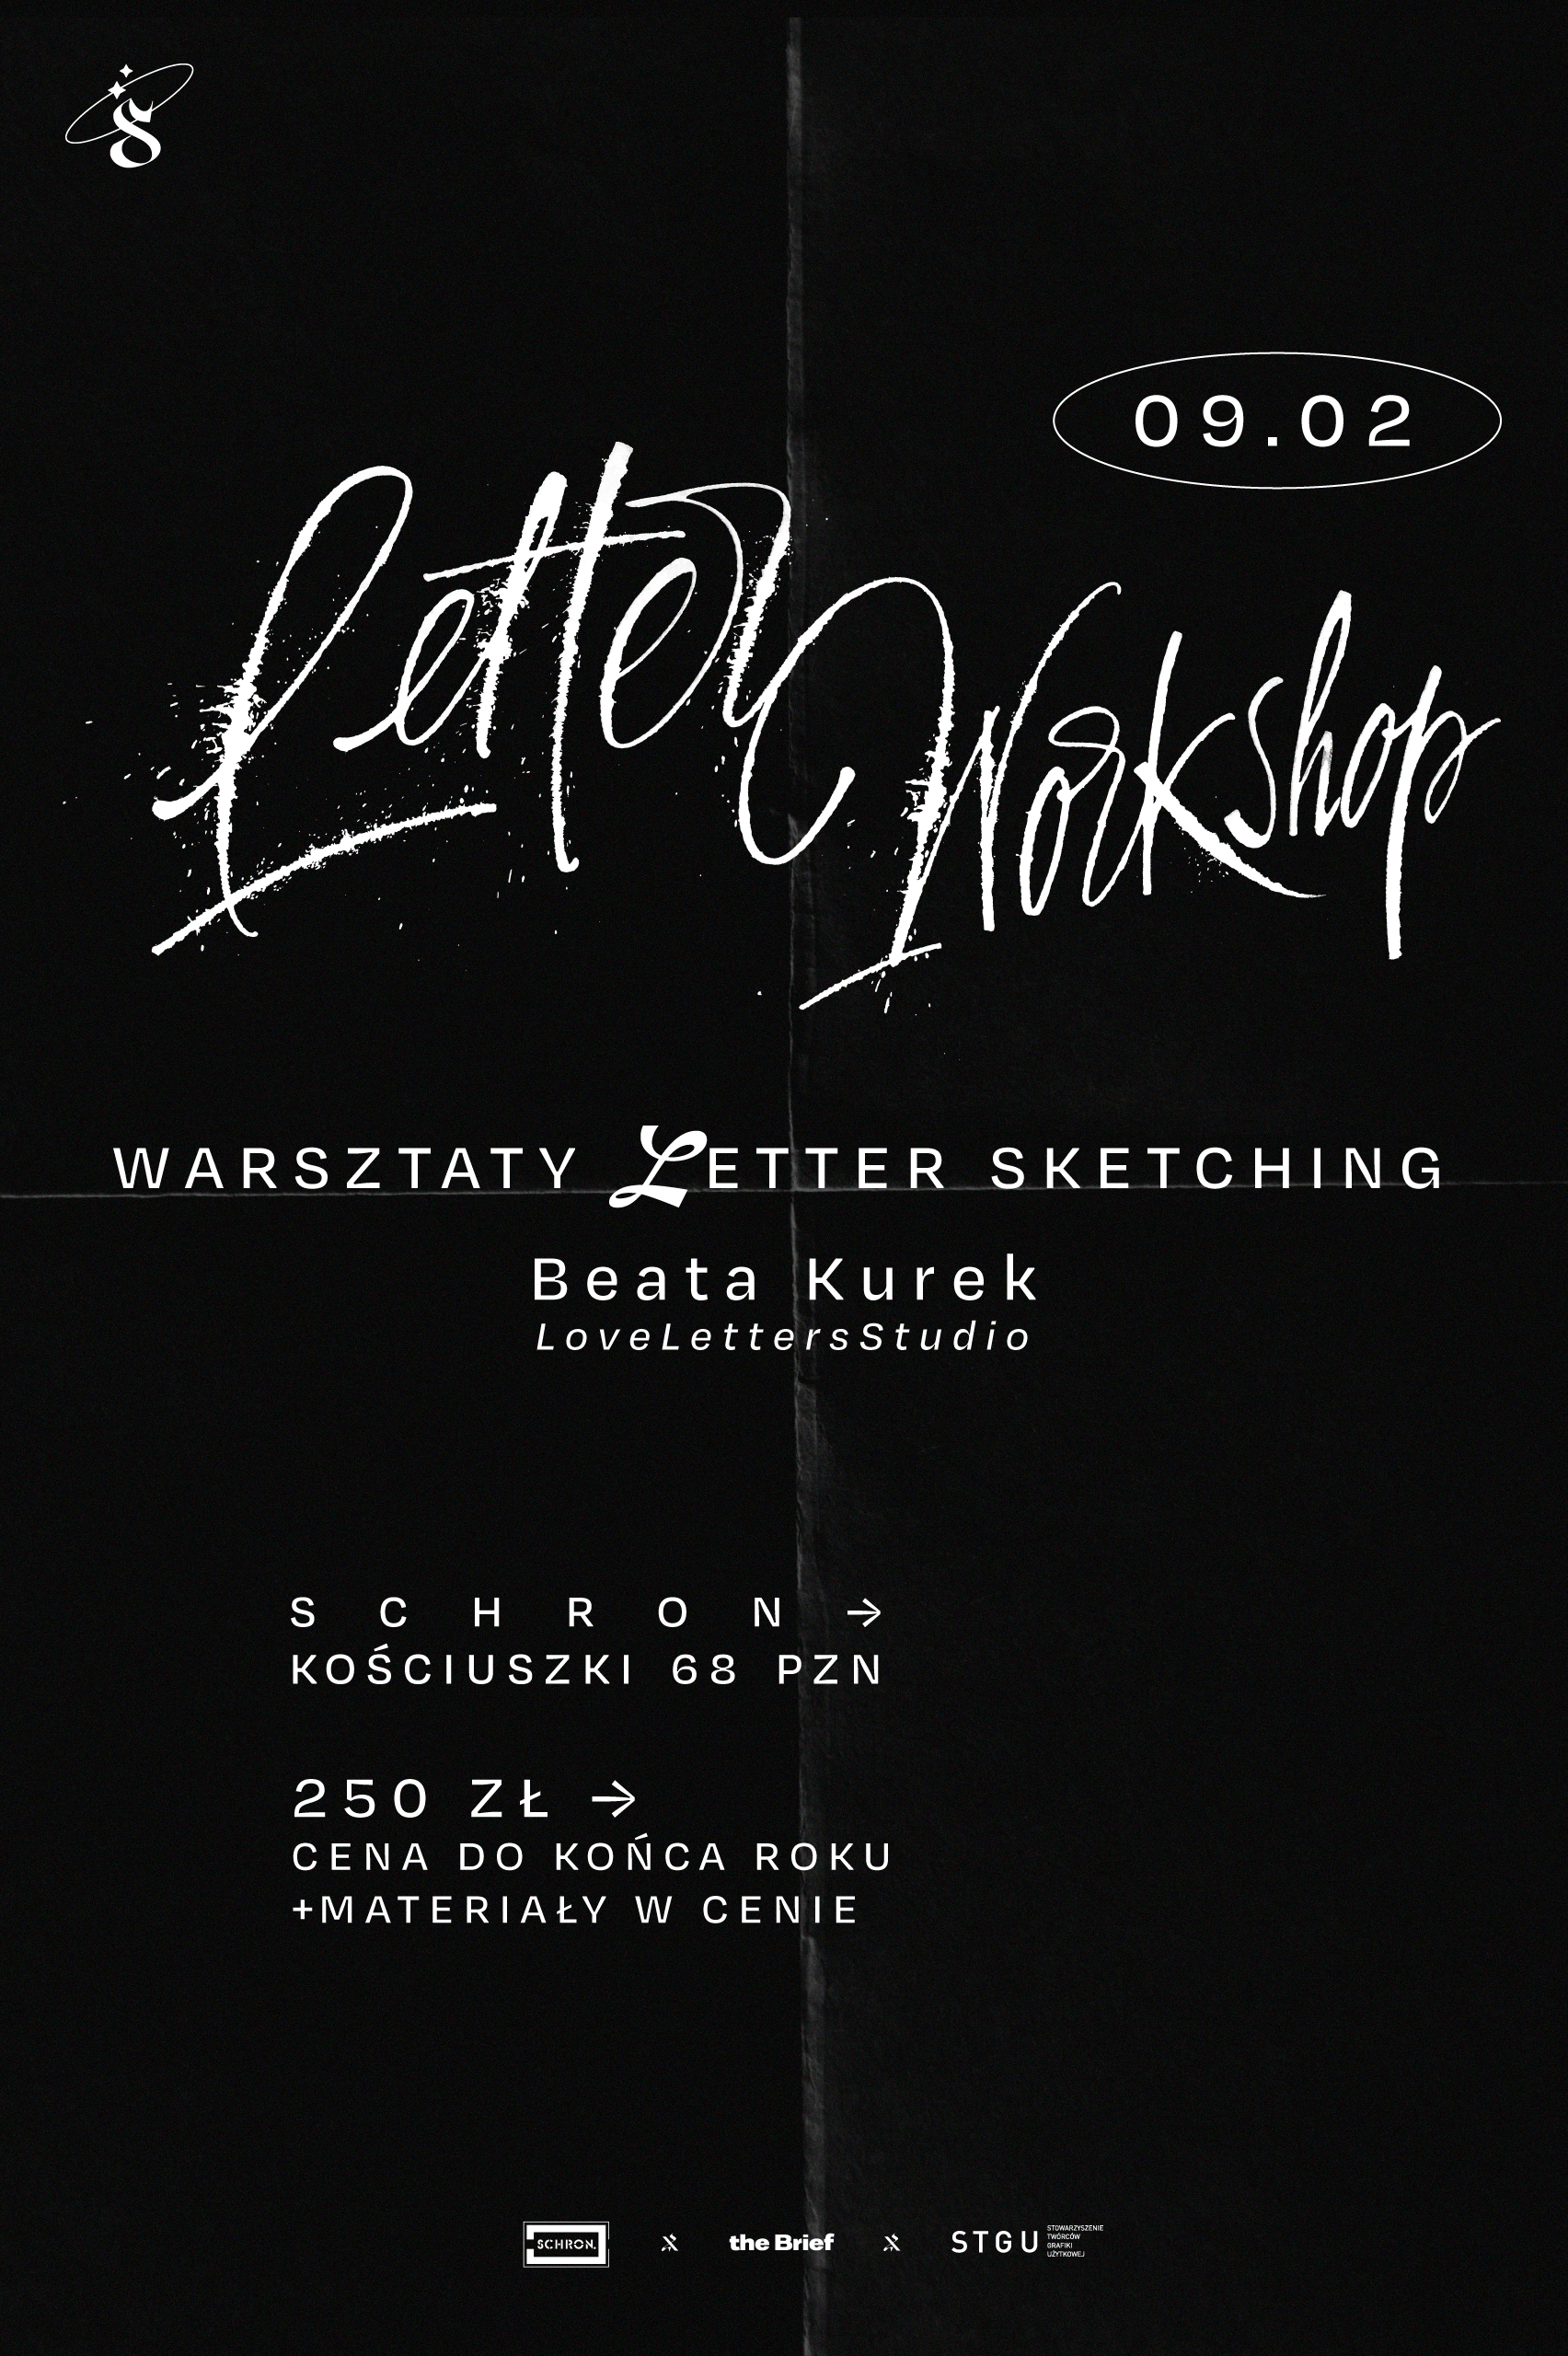 Santa Grafika: Warsztaty Letter Sketching -15%!